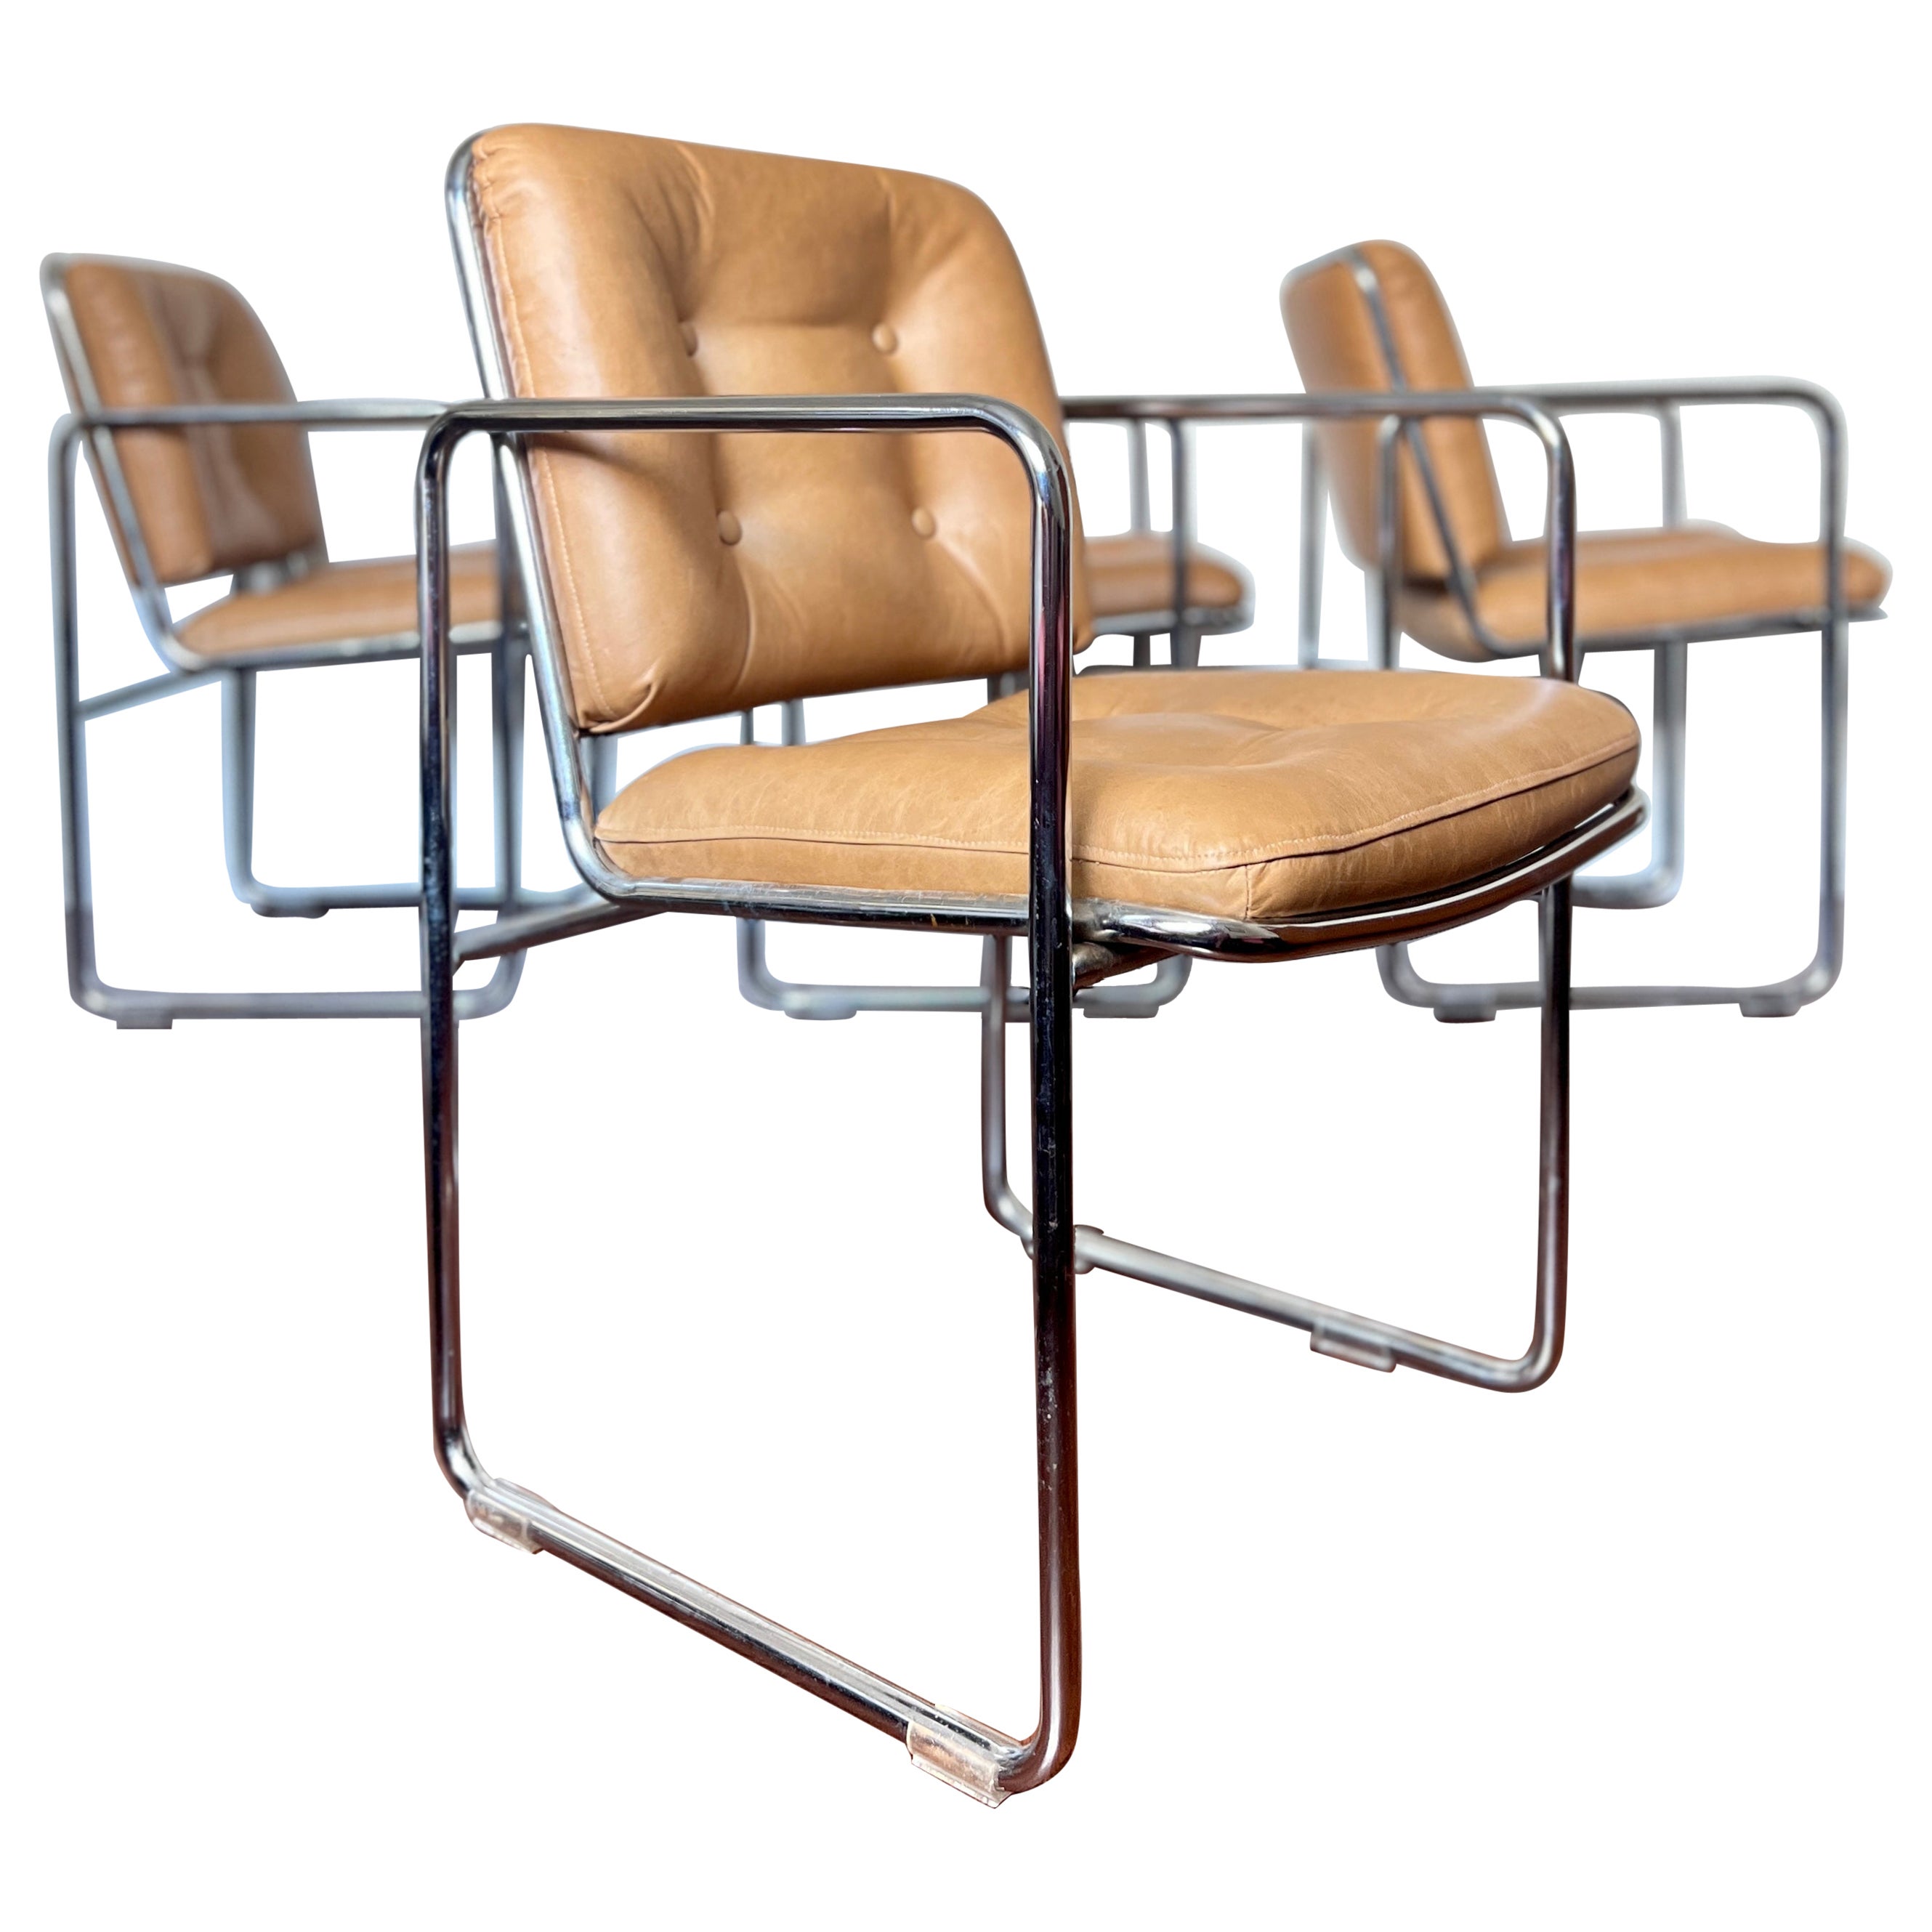 Vintage 1960s Mid-Century Modern Chrome Tubular Leather Tan Chairs by Chromcast